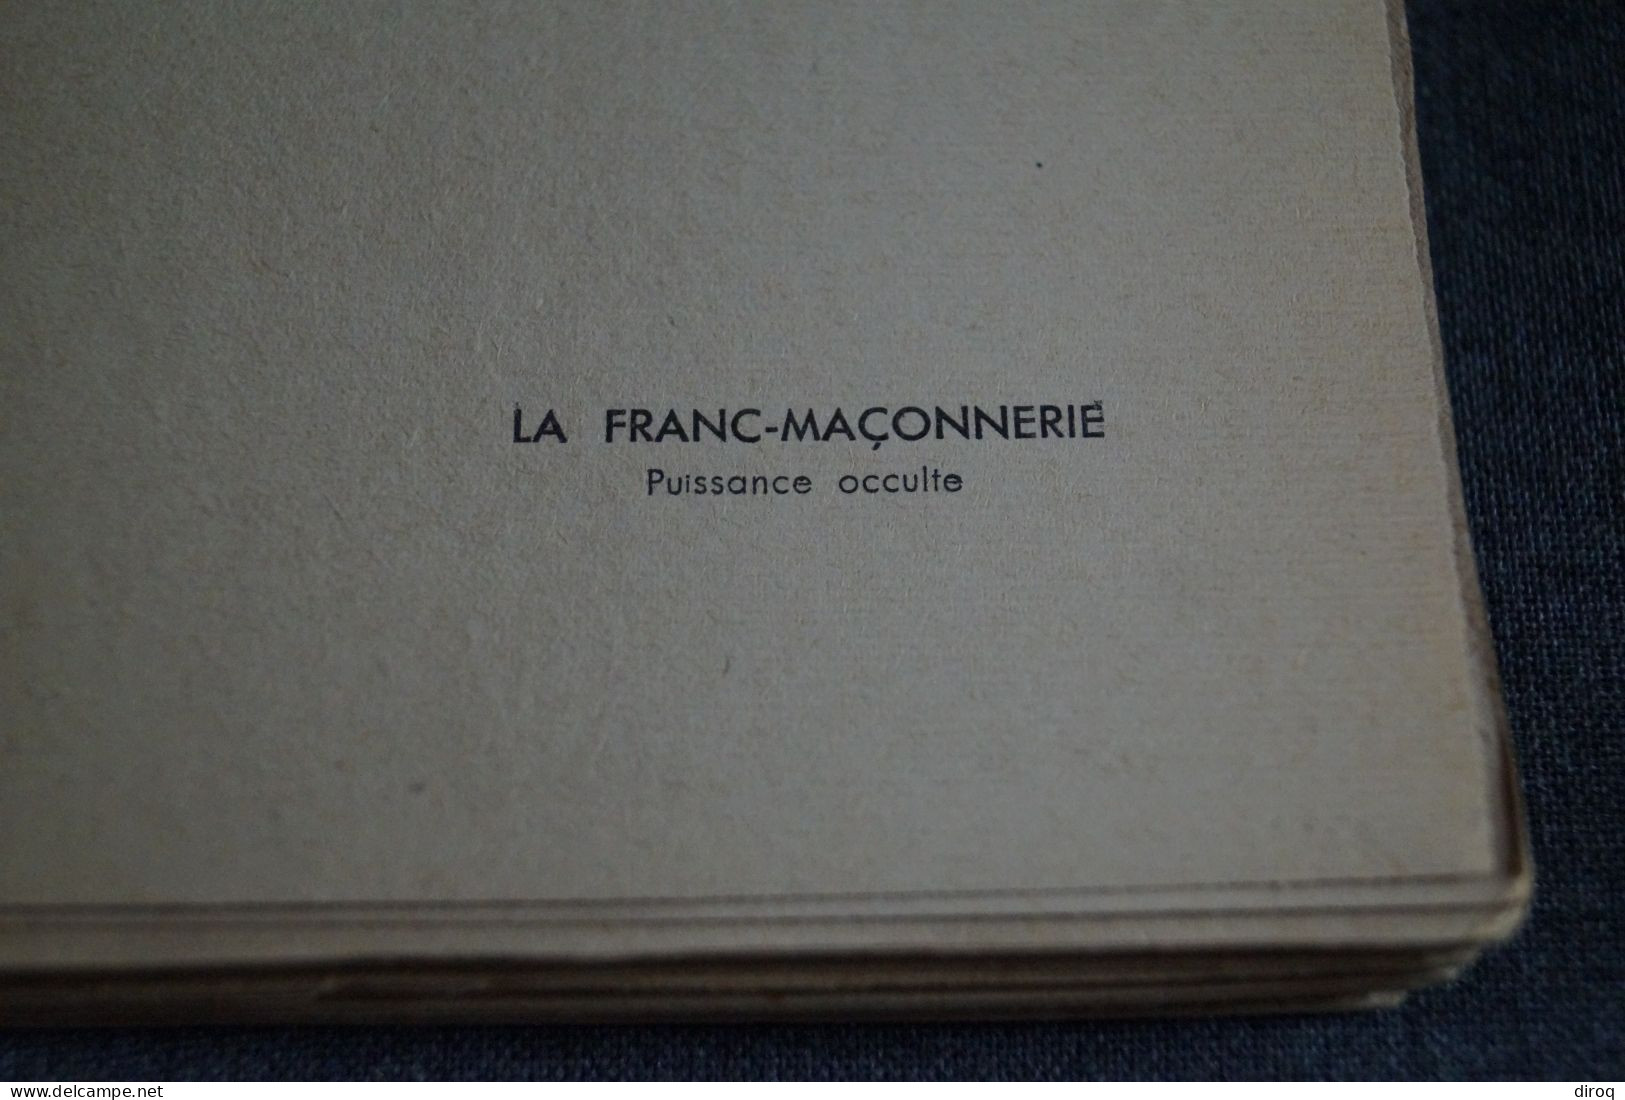 RARE Ouvrage De Franc-Maçonnerie 1932,Léon Poncin,Puissance Occulte,130 Pages,19 Cm./12 Cm. - Religión & Esoterismo